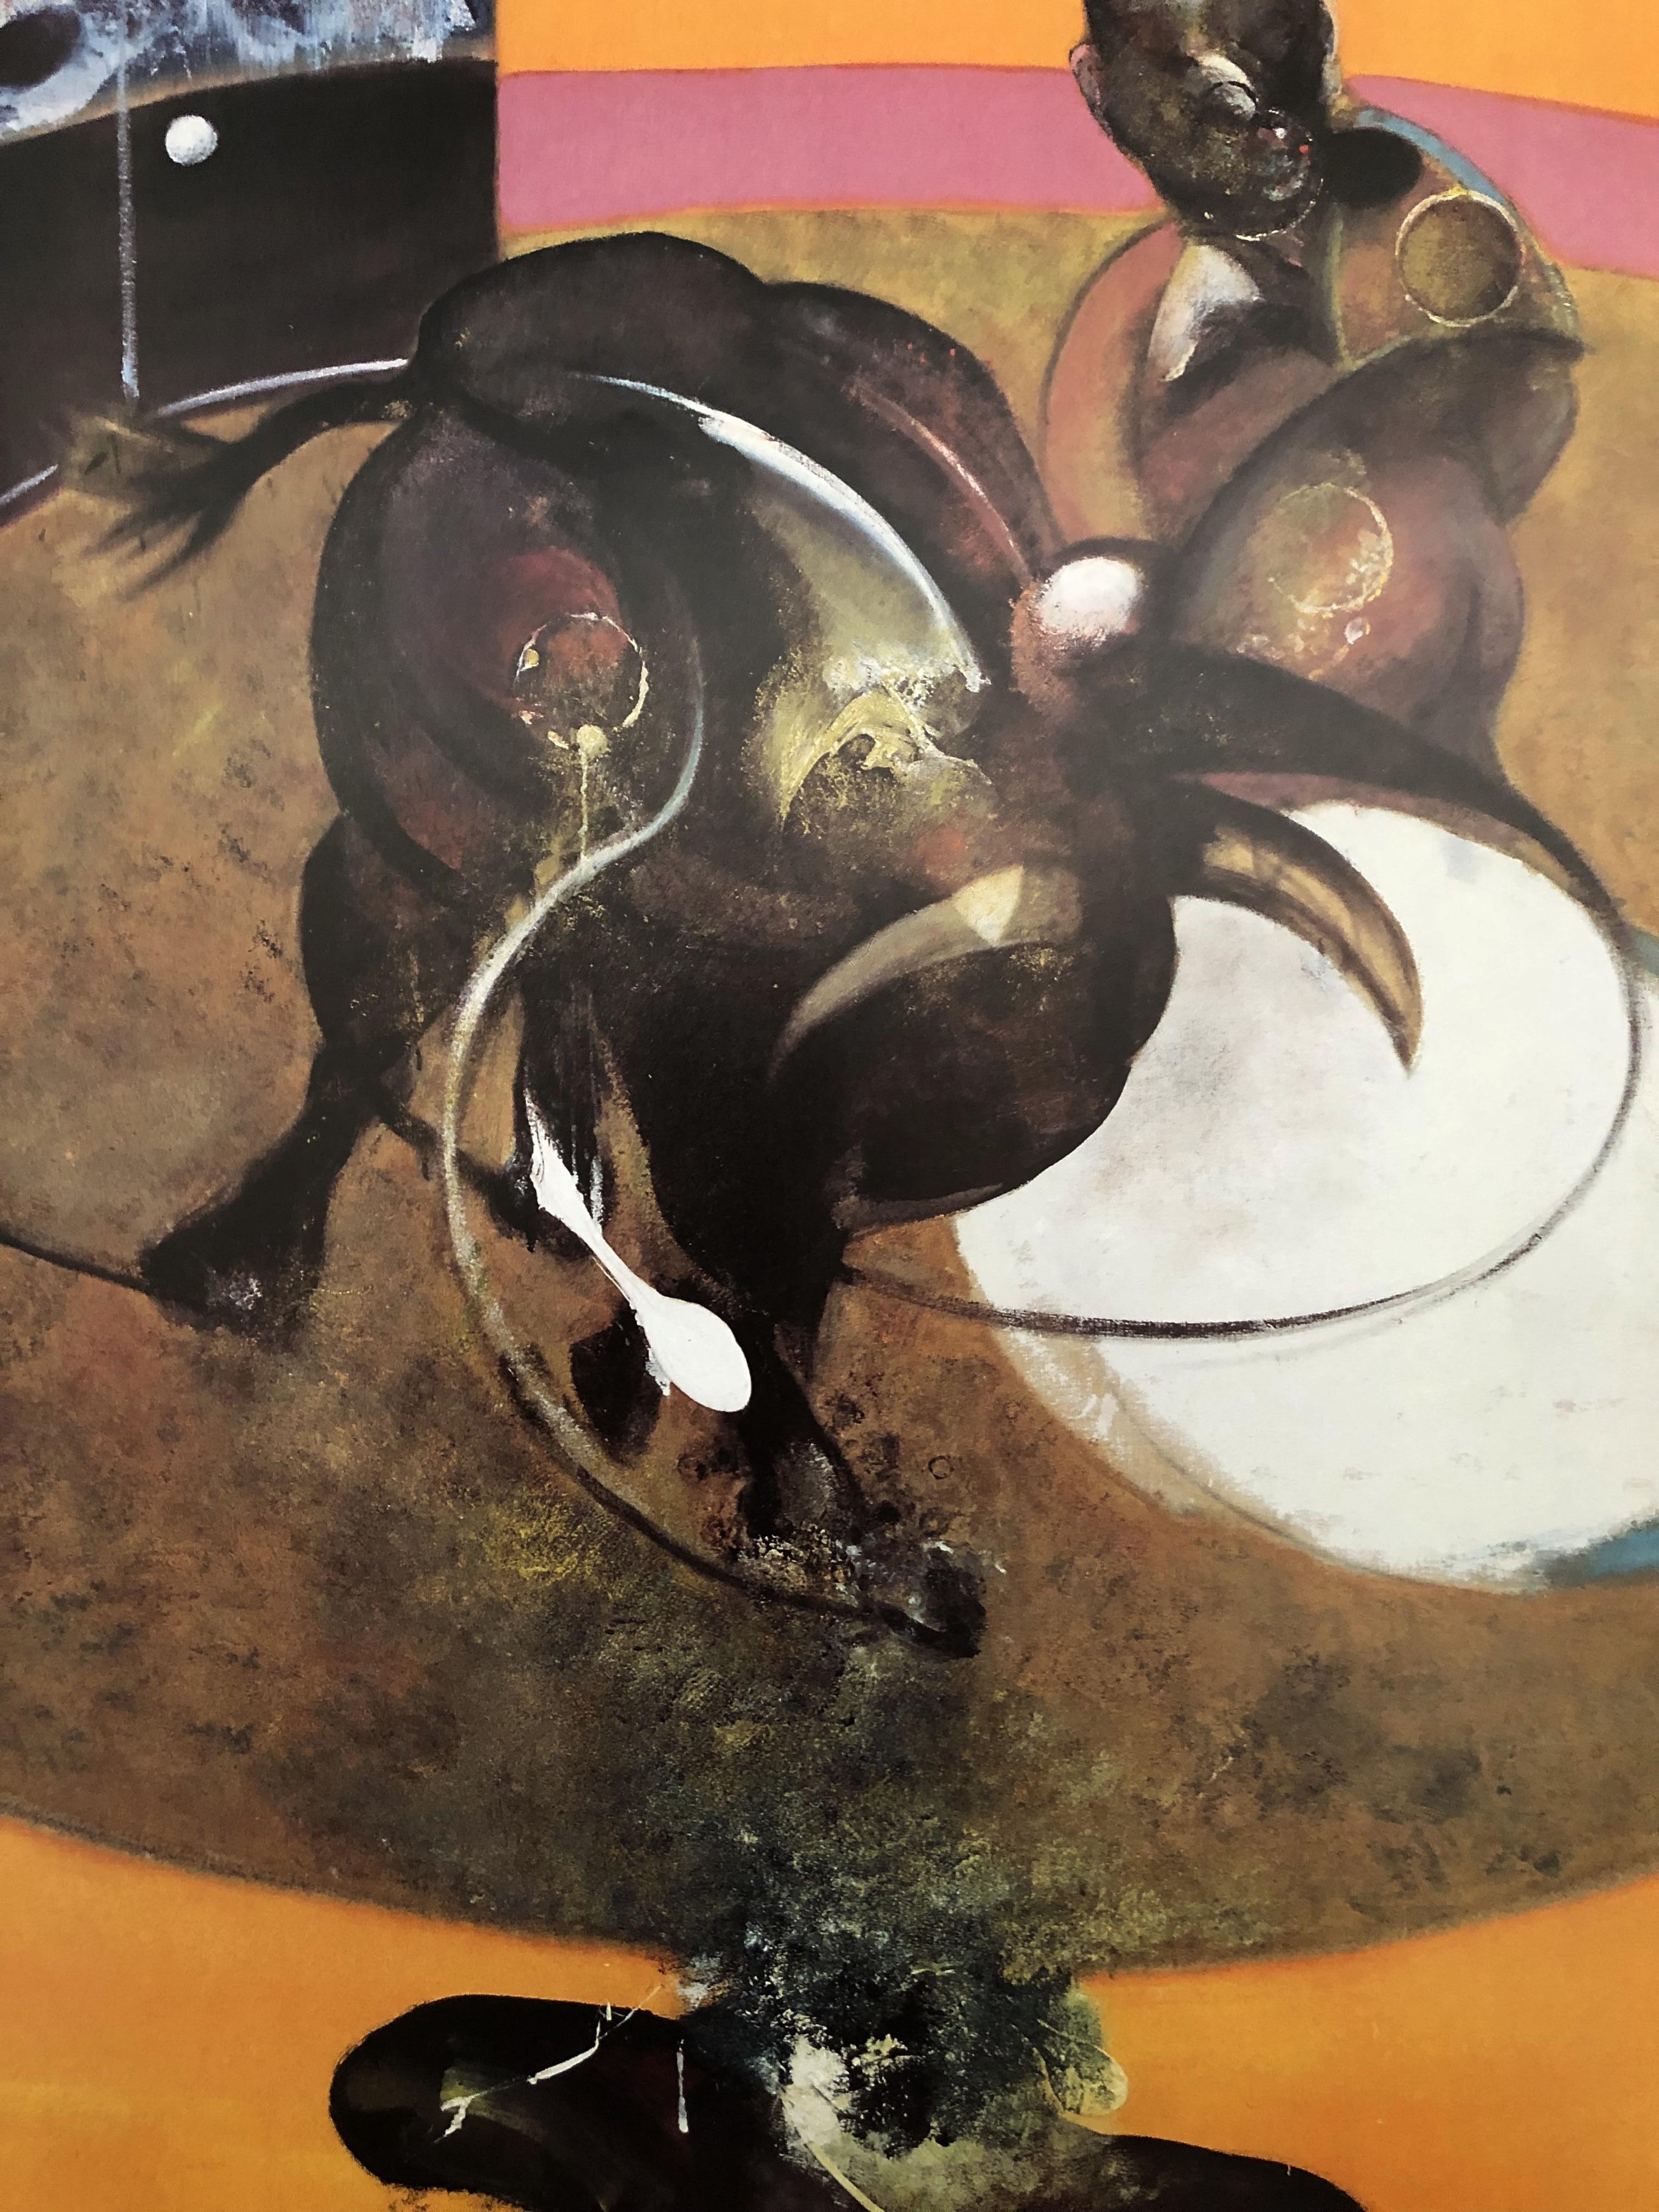 (D'après) Francis Bacon
Étude pour une corrida

Affiche, 1995
Imprimé et publié par Maeght
Taille 86 x 50 cm (c. 33,8 x 19,7 in)
Excellent état.
